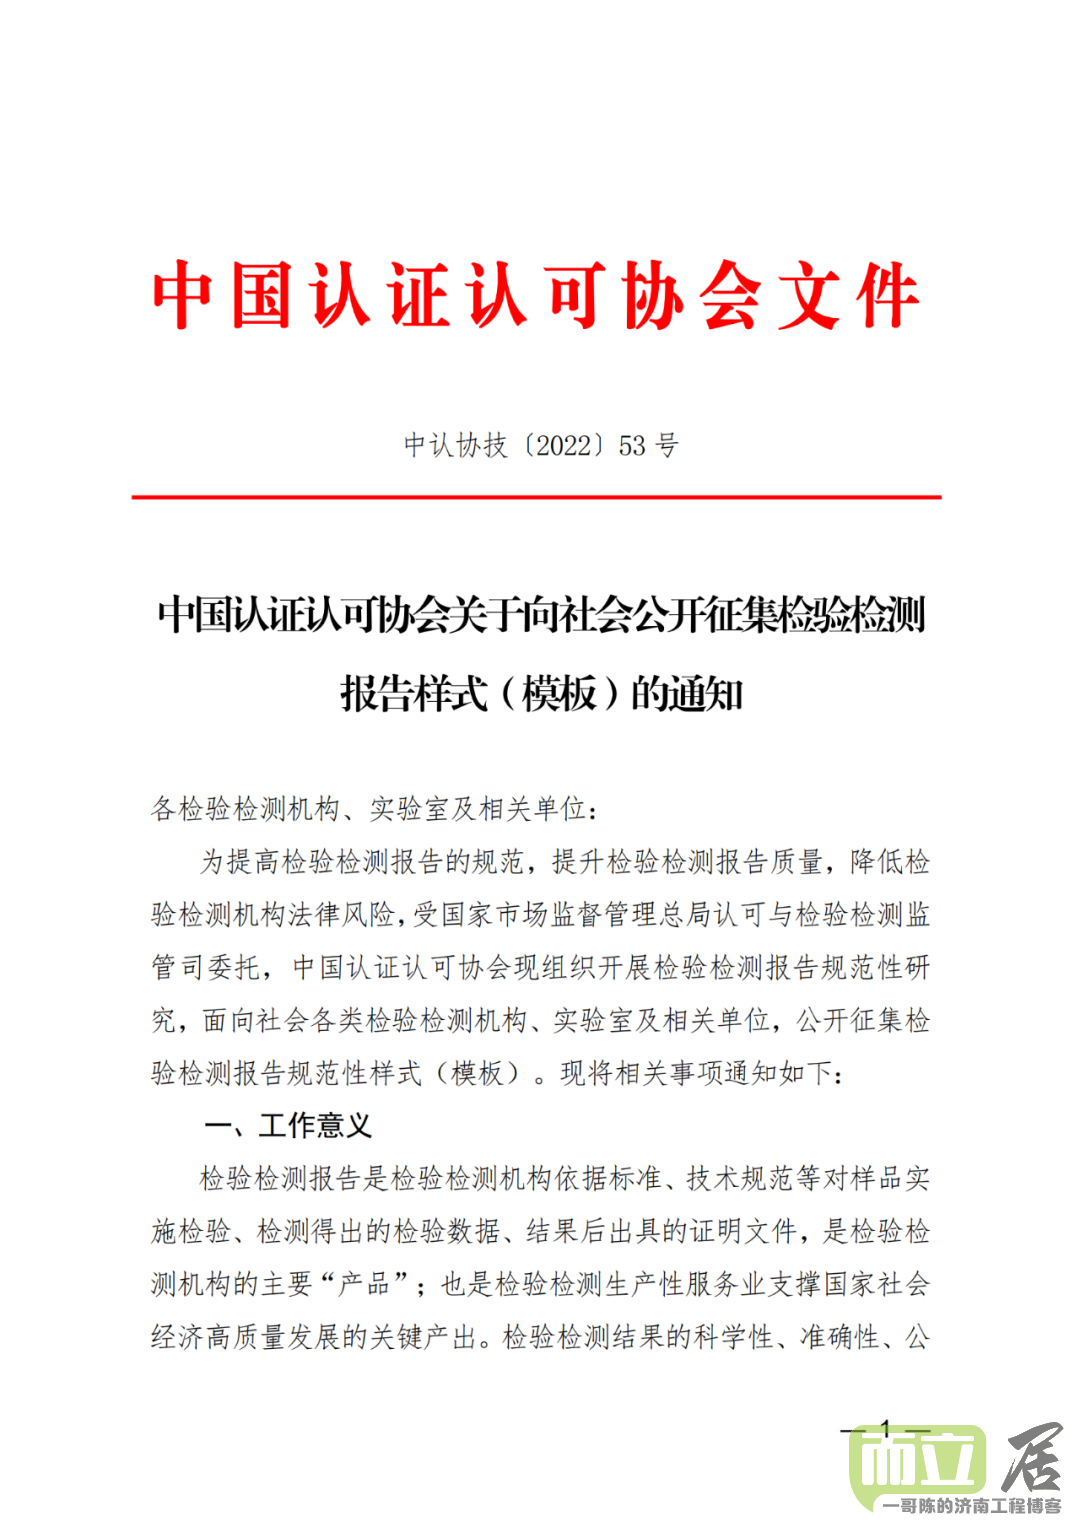 中国认证认可协会关于向社会公开征集检验检测报告样式（模板）的通知